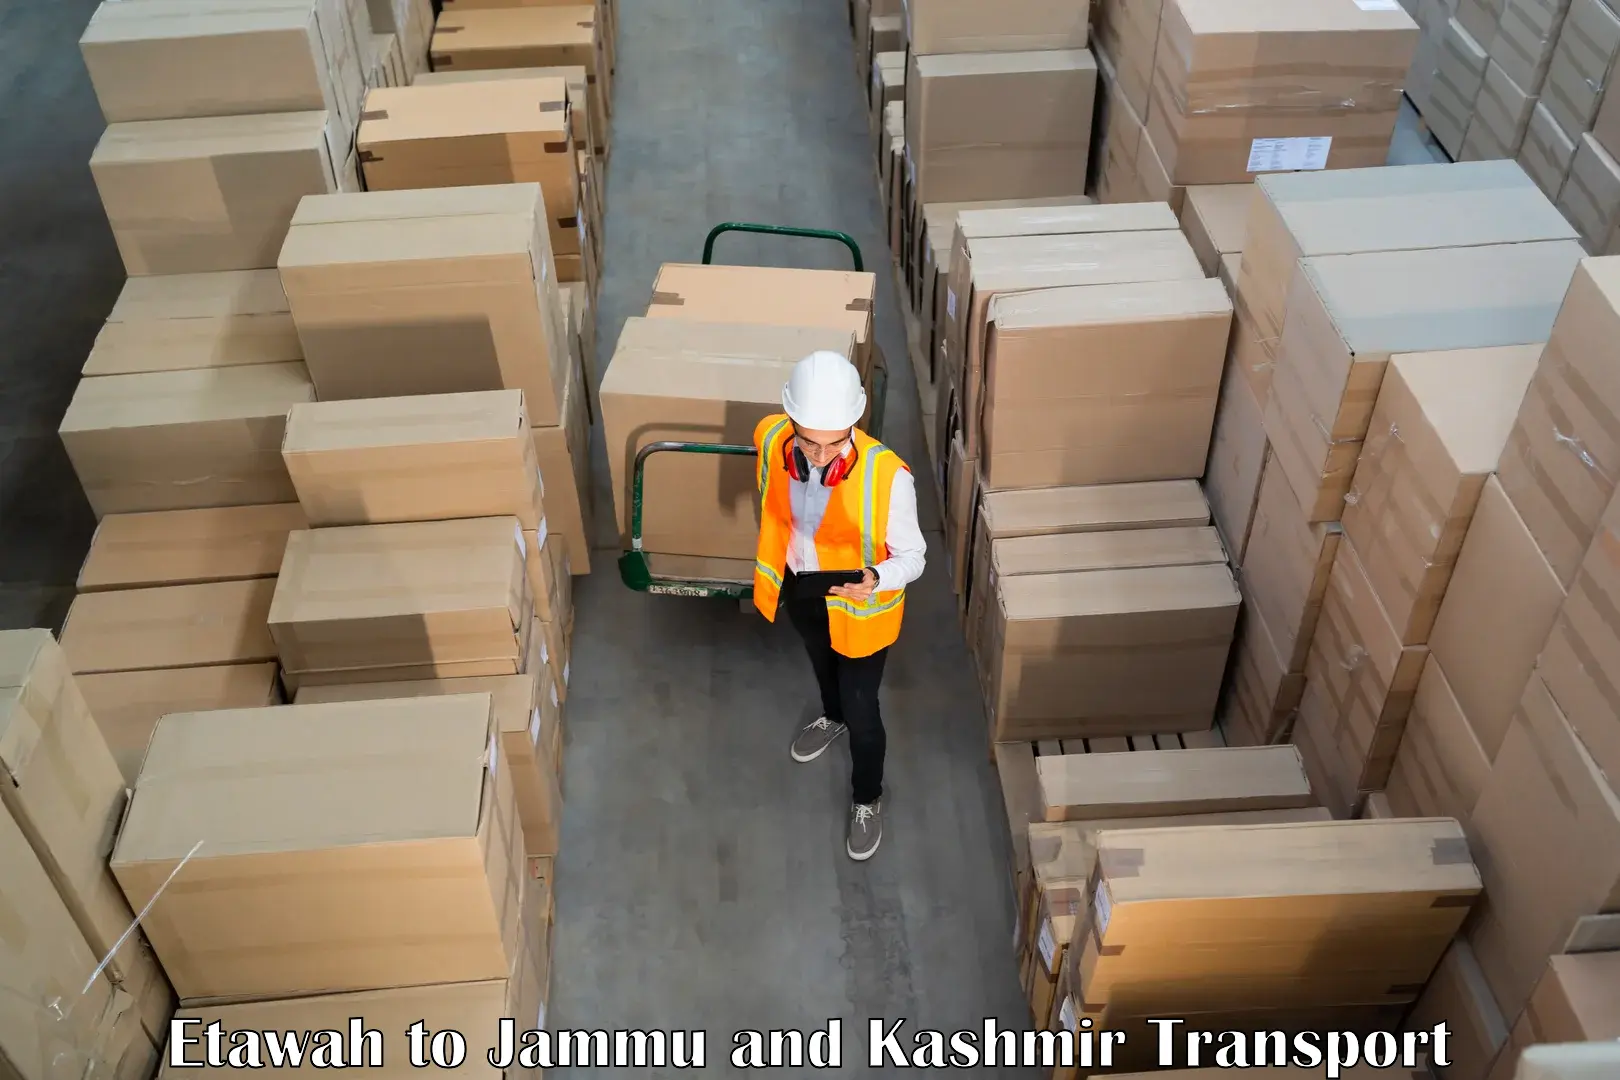 Shipping partner Etawah to Rajouri